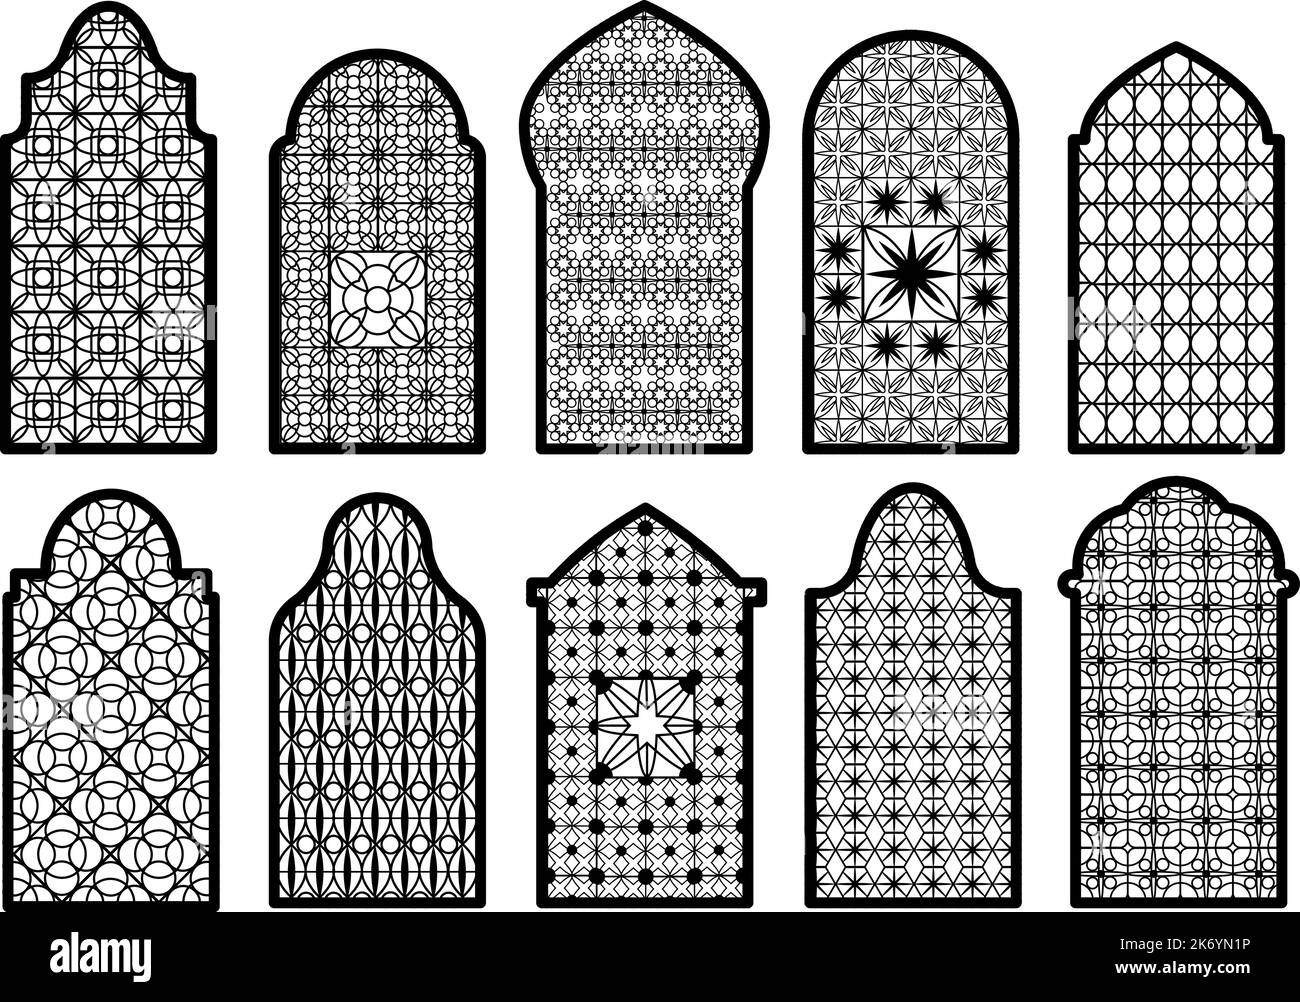 Islamische Zierfenster. Arabischer Fensterbogen, traditionelle orientalische religiöse Dekorelemente. Schöne Türen Formen, isolierte Rahmen anständigen Vektor Stock Vektor